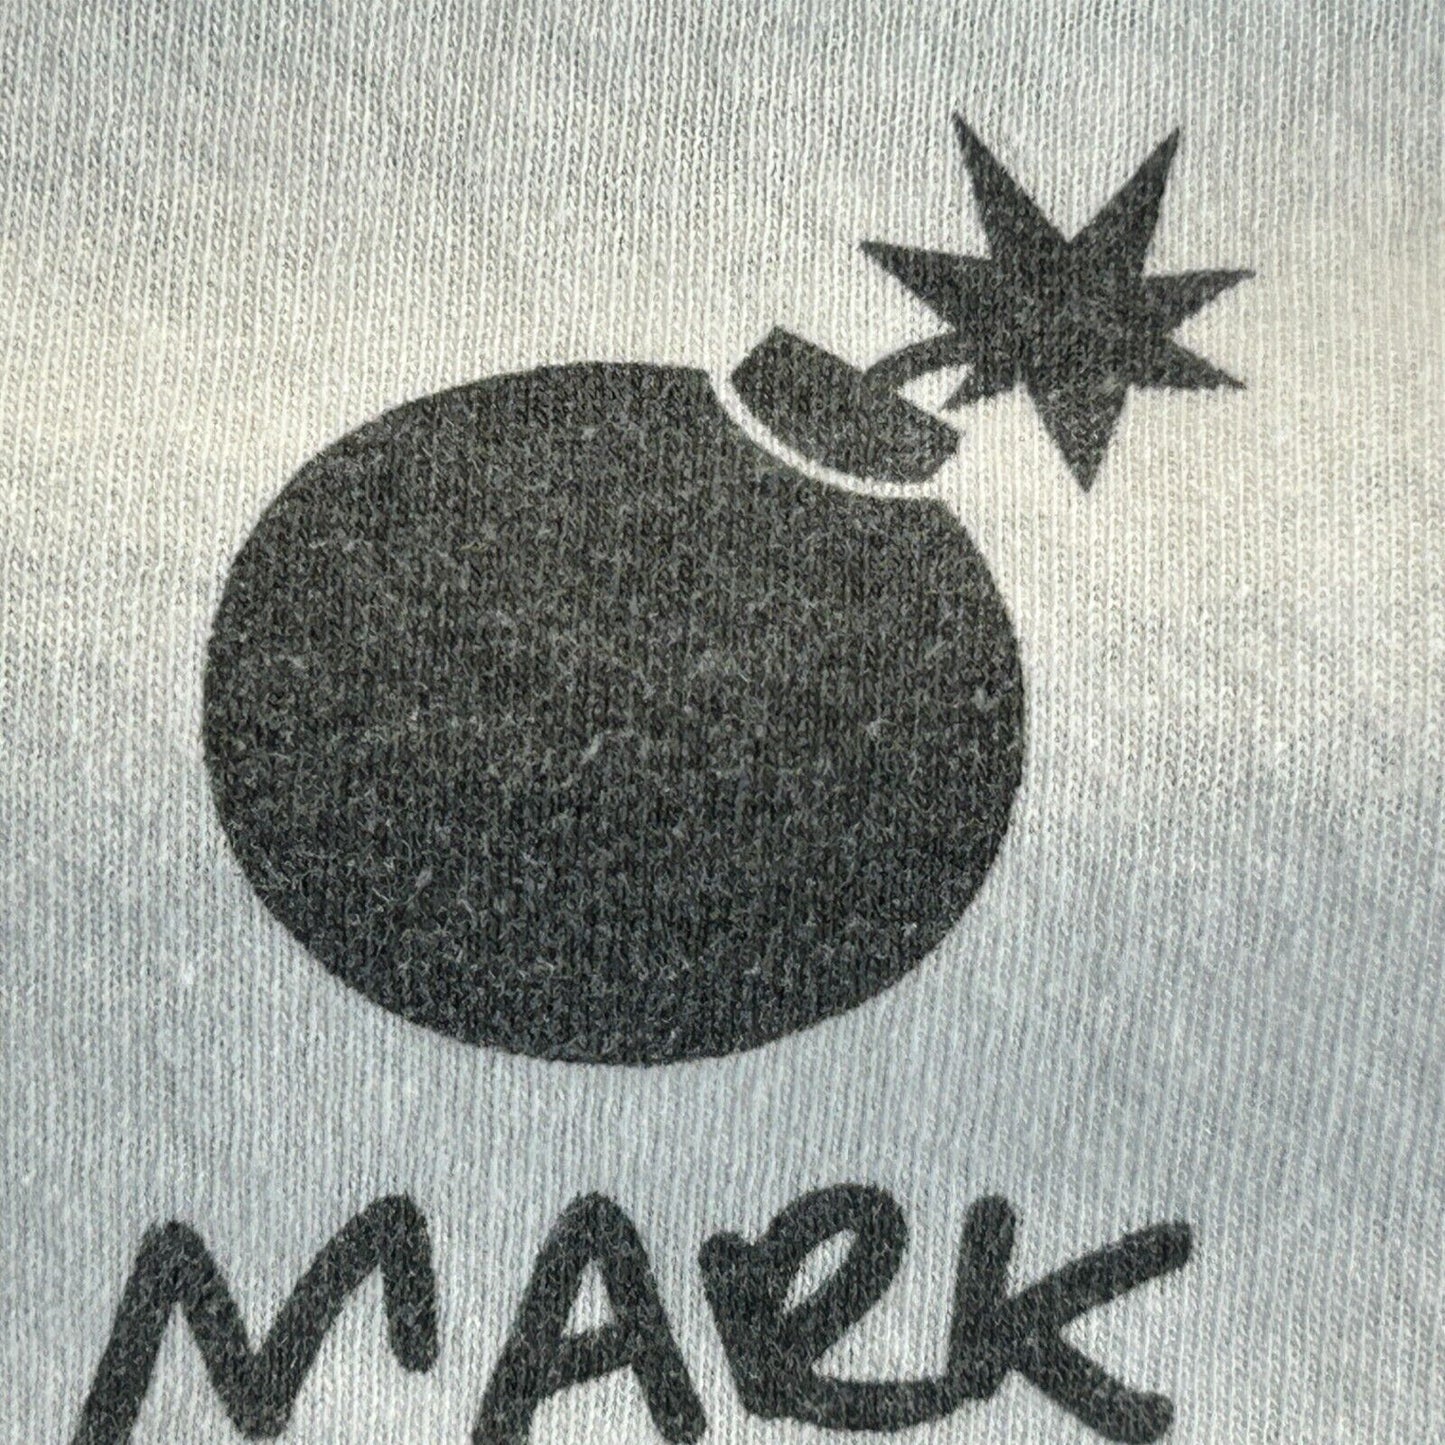 The Hundreds x Mark Dean Veca T Shirt Pop Art Adam Bomb Streetwear White Tee XL